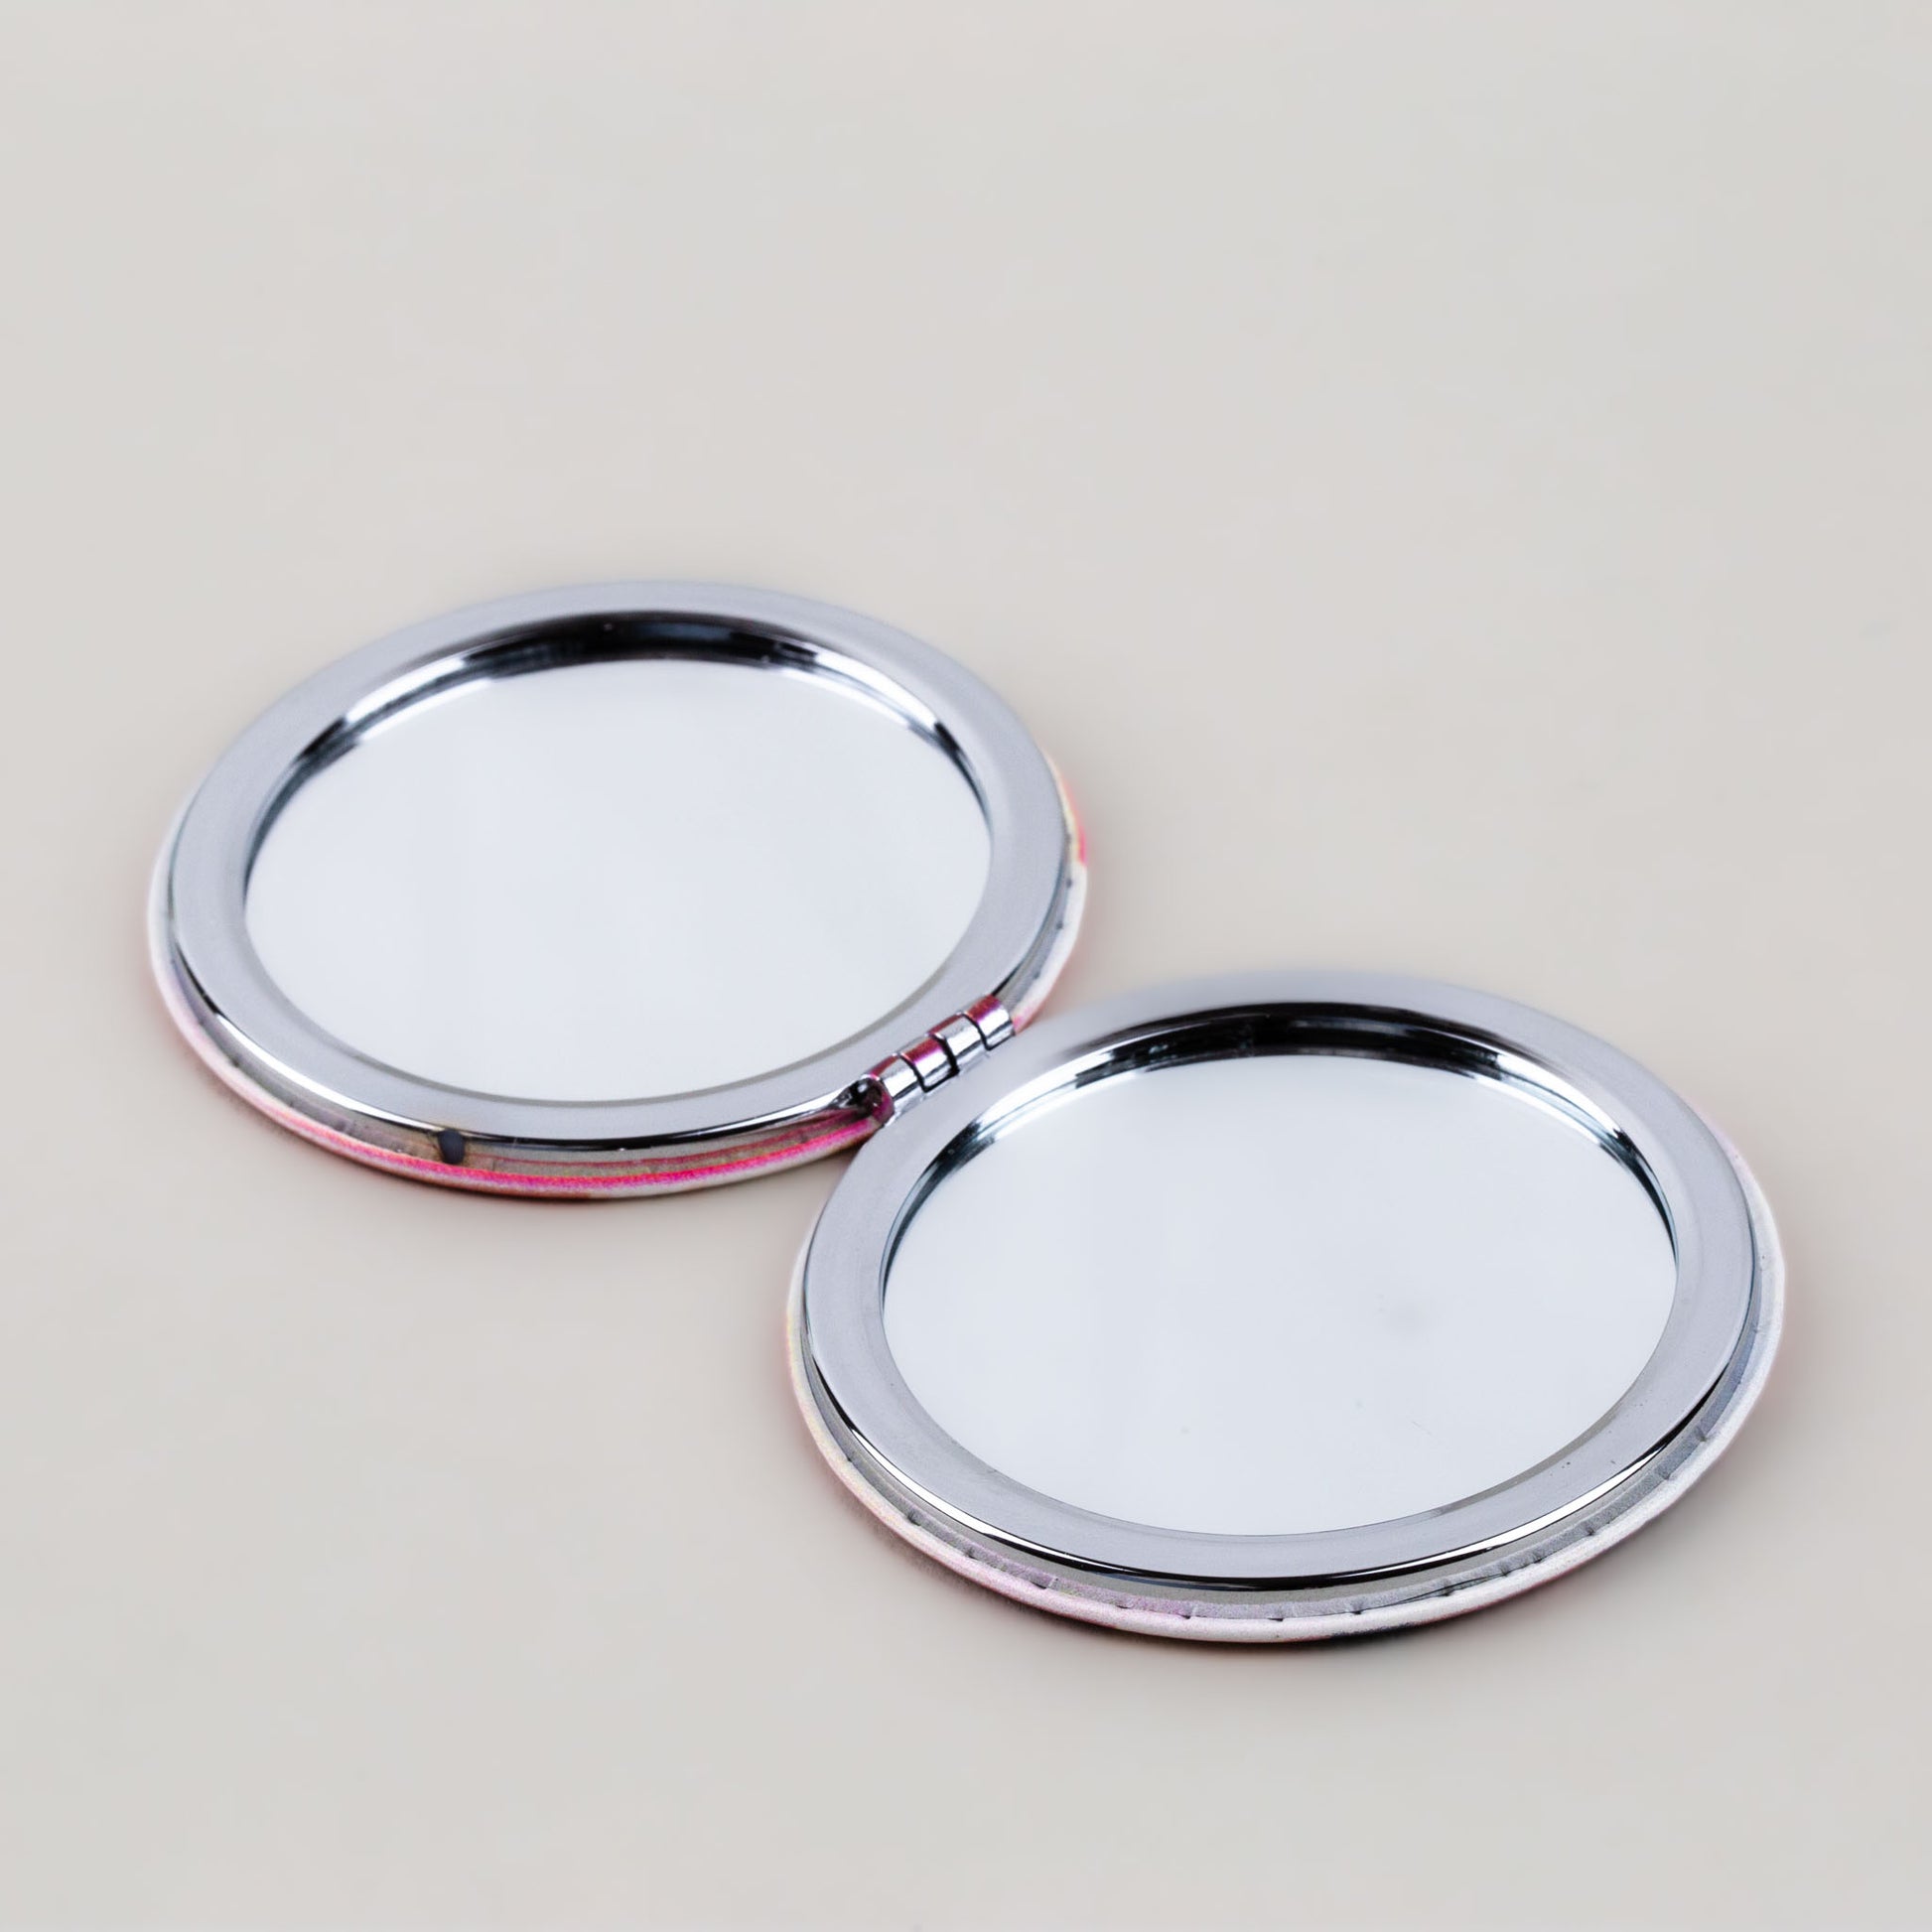 Oglindă de poșetă, formă rotundă cu 2 părți, model city break - Caviar